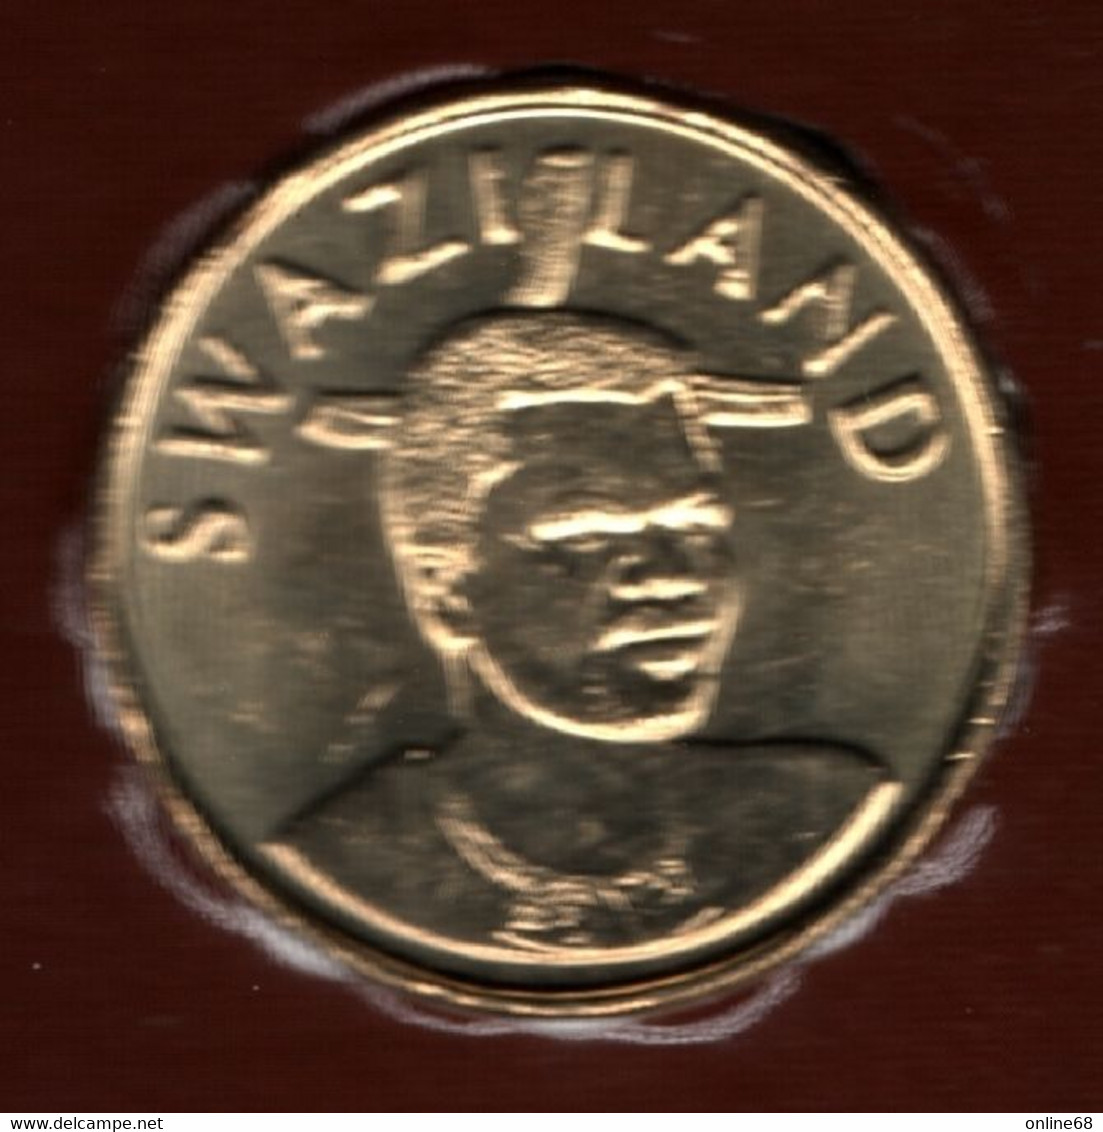 SWAZILAND 1 LILANGENI 2003 KM# 45  Mswati III - The Queen Mother - Swaziland